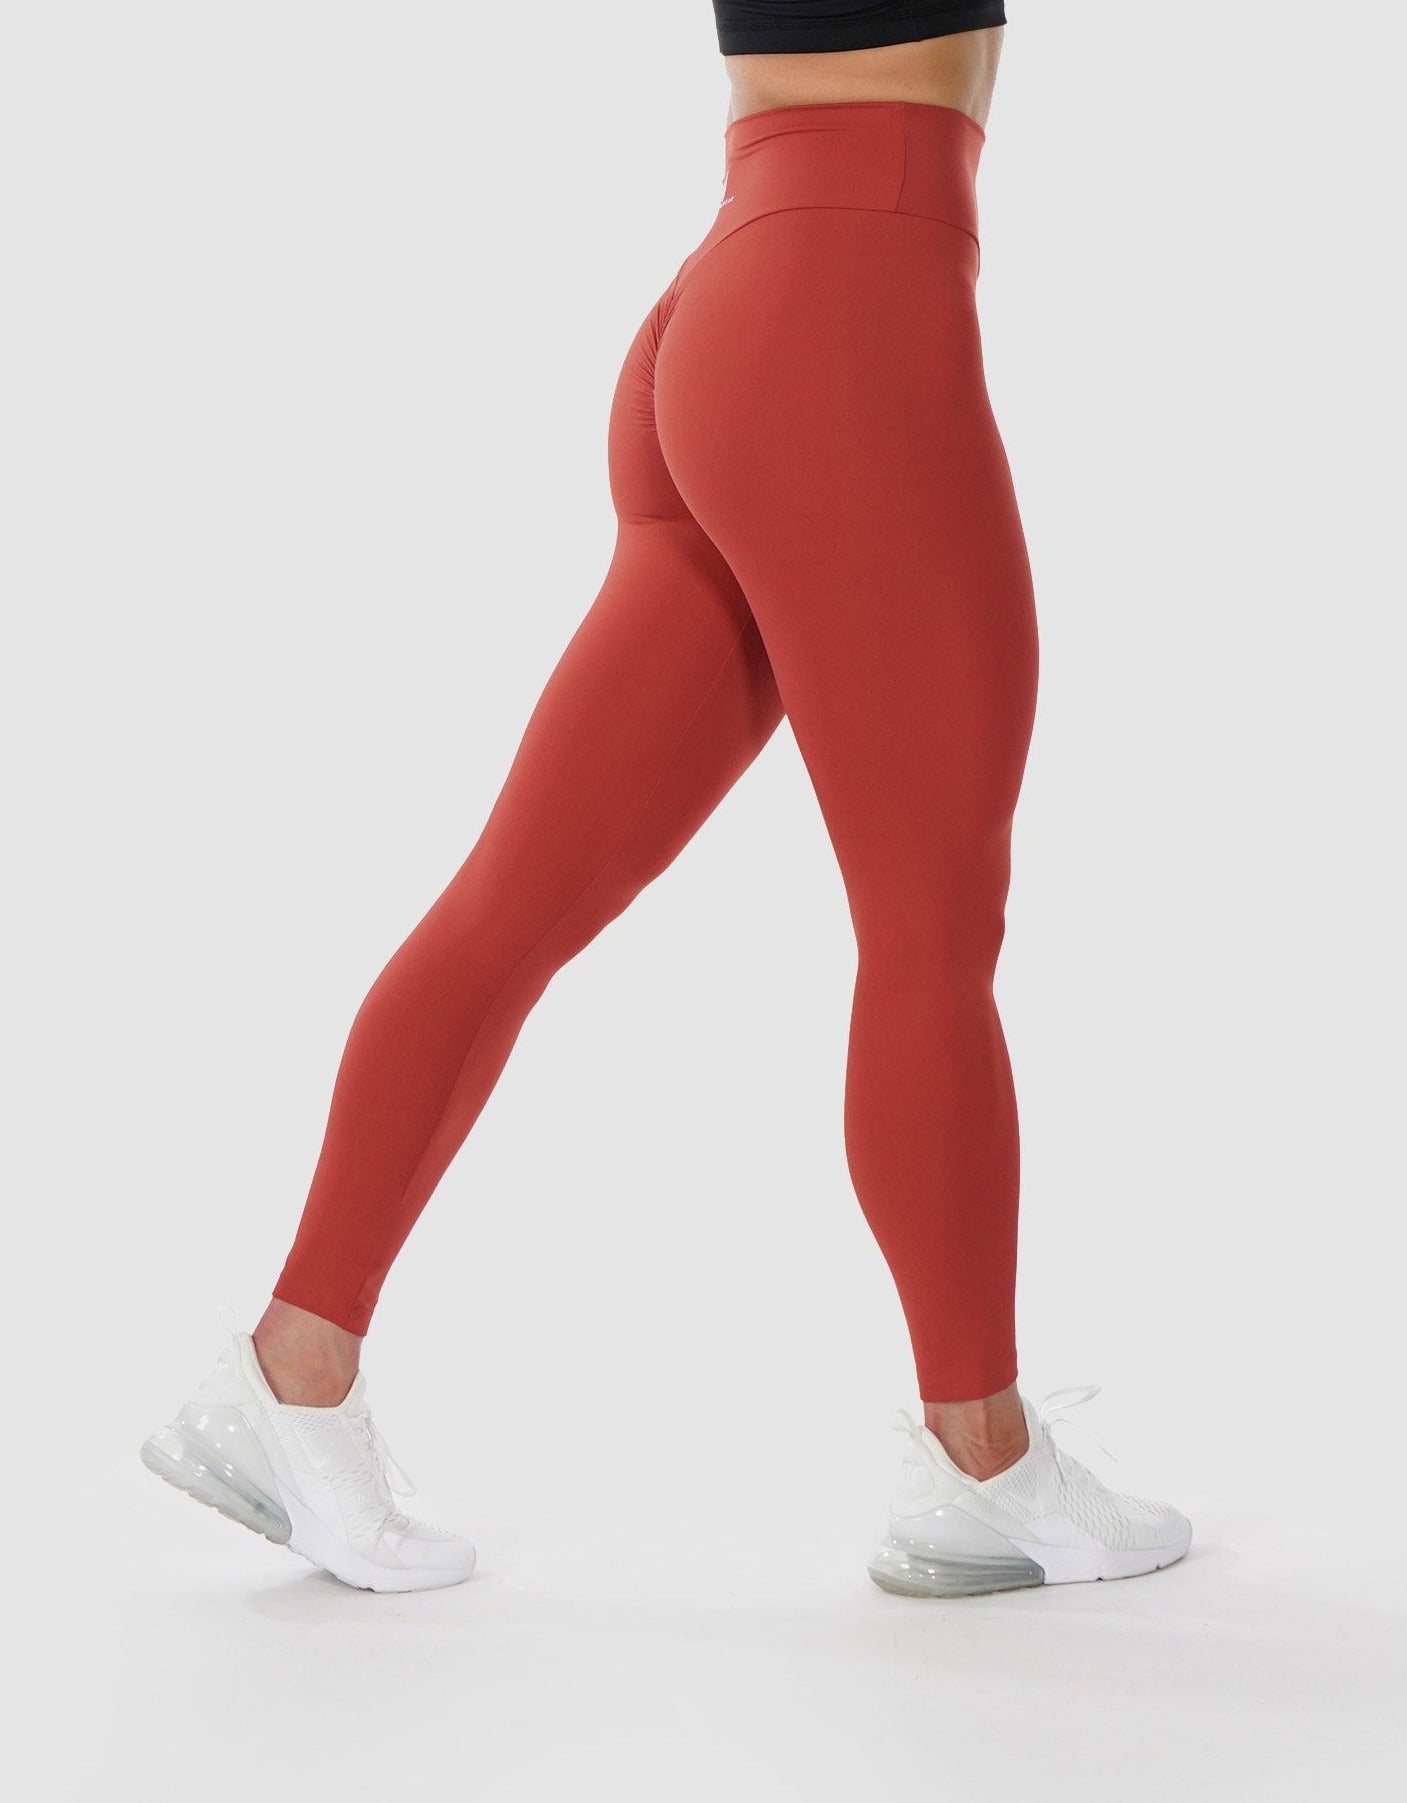 https://devoteewear.ca/cdn/shop/products/devoteewear-buttercream-scrunch-bum-legging-leggings-joggers-234084.jpg?v=1708445091&width=1407